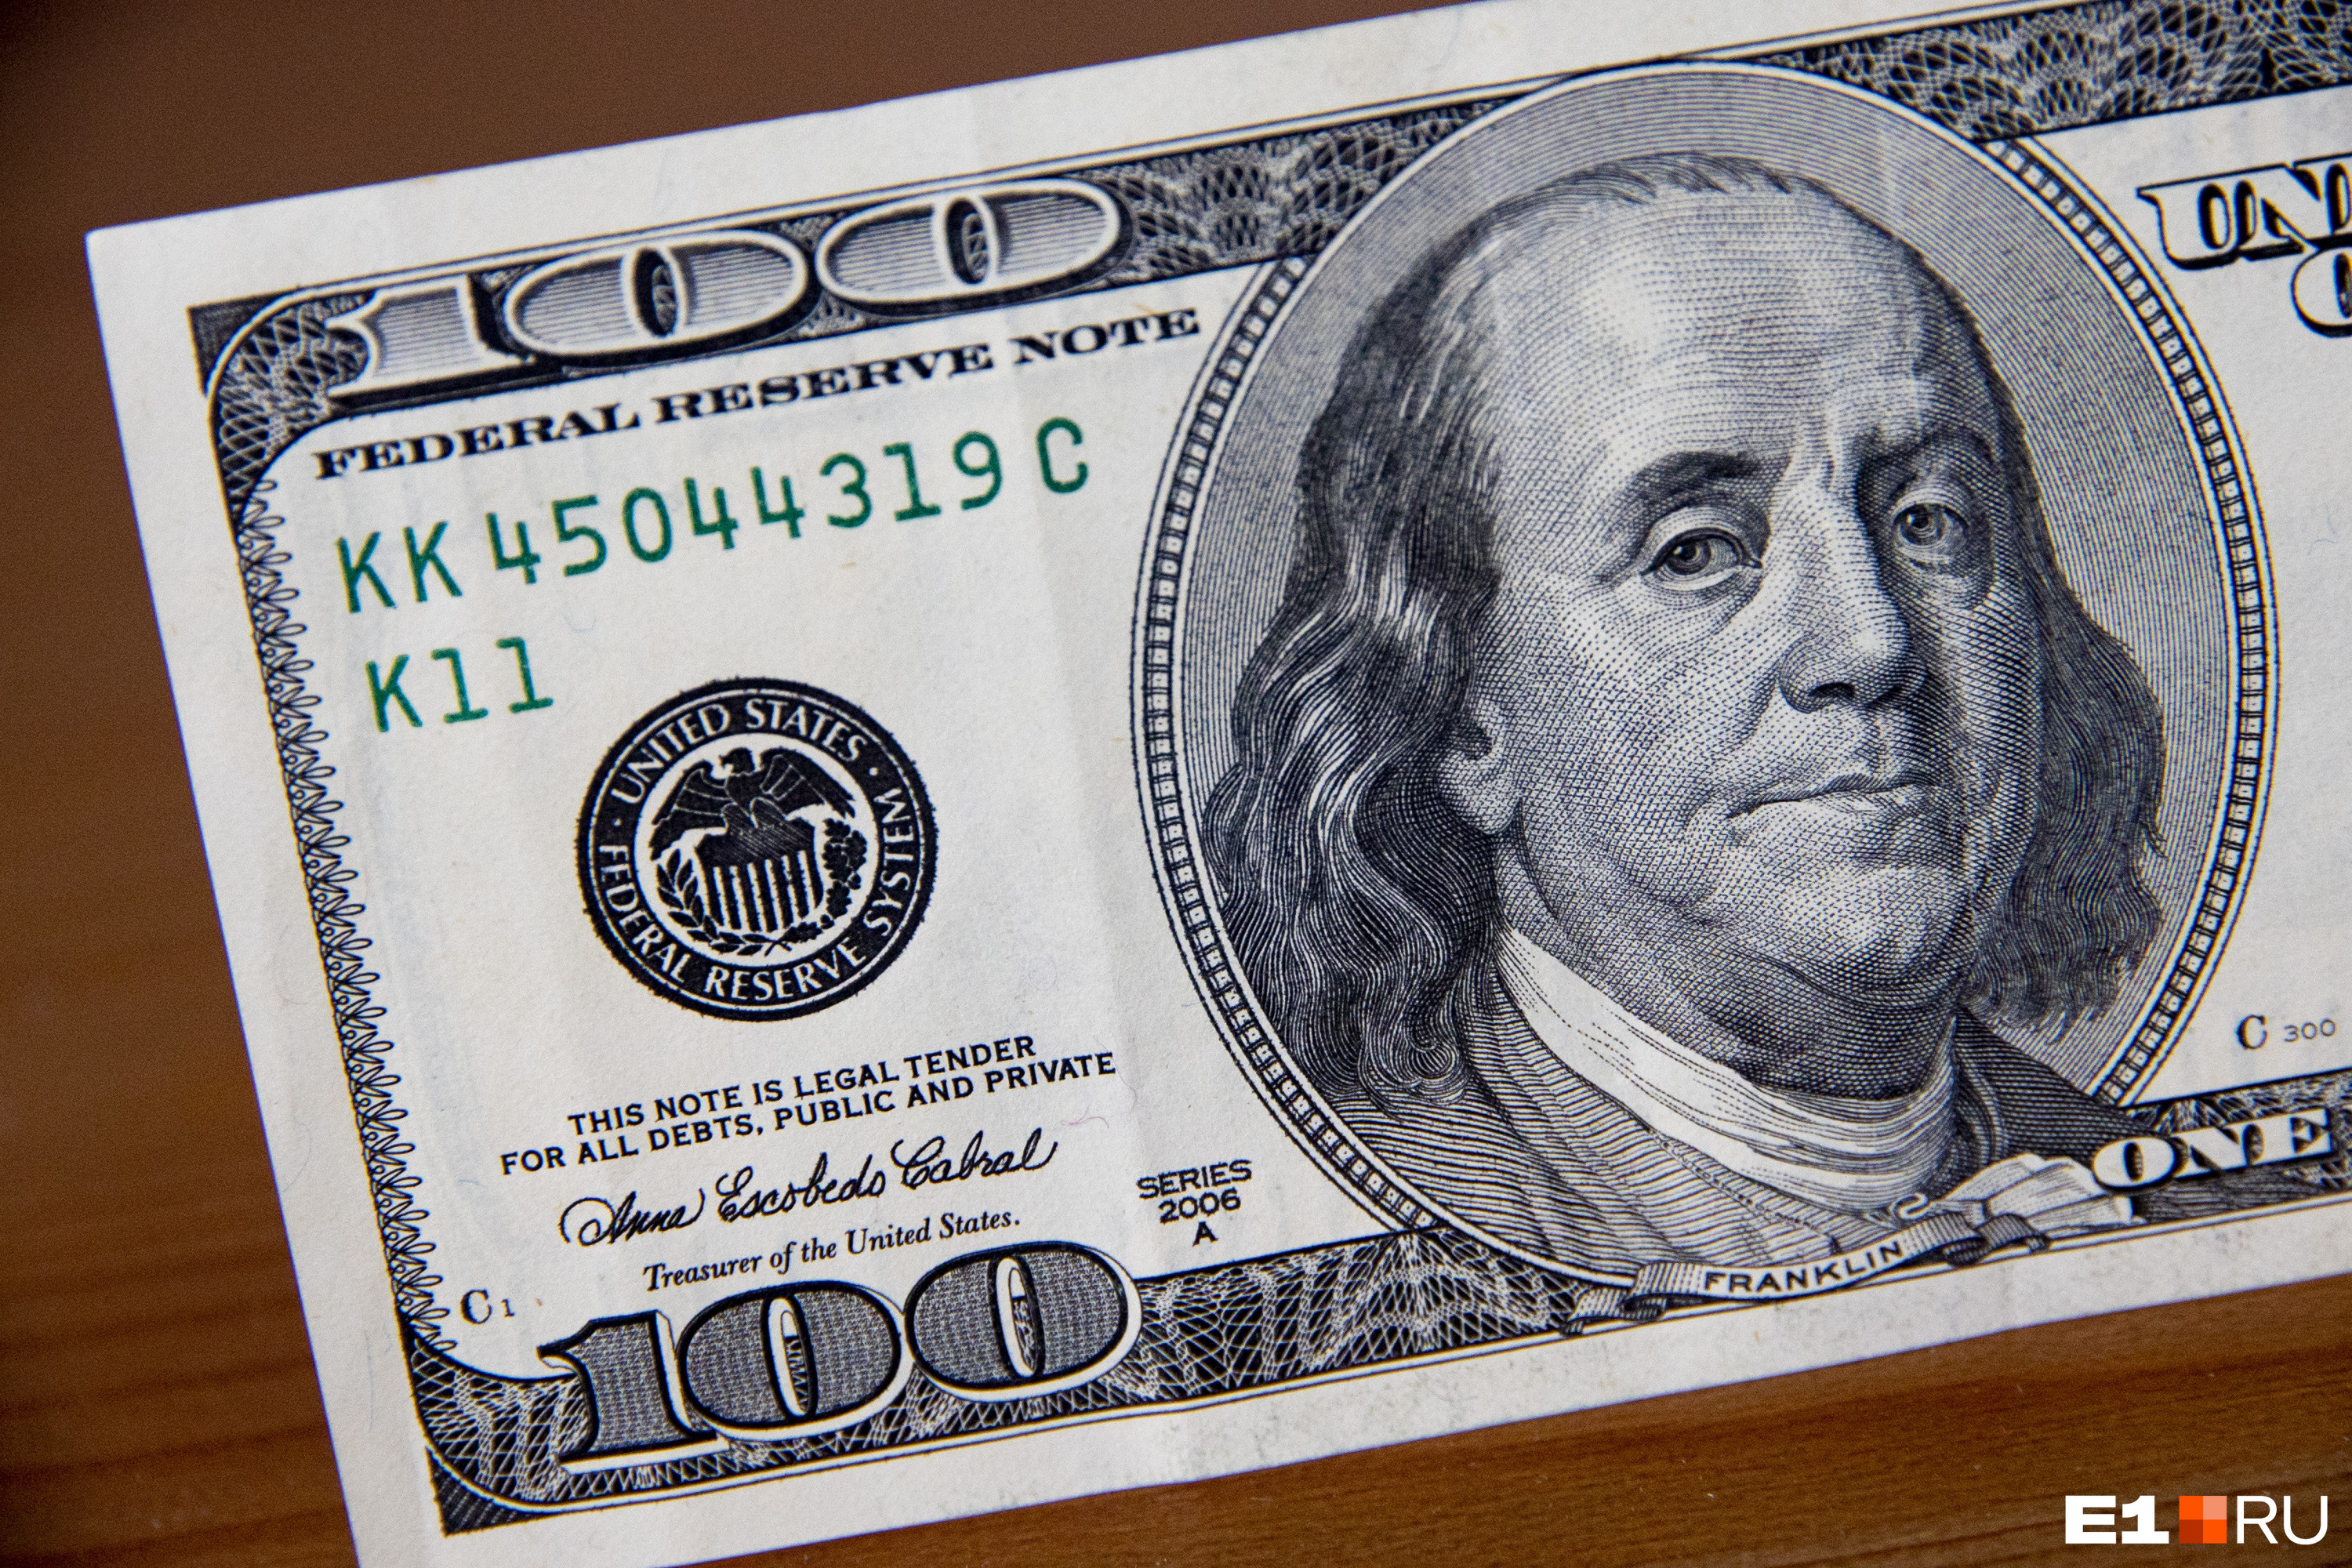 Бенджамин Франклин и МВД просят не переводить деньги неизвестным, даже если это кажется выгодным предложением